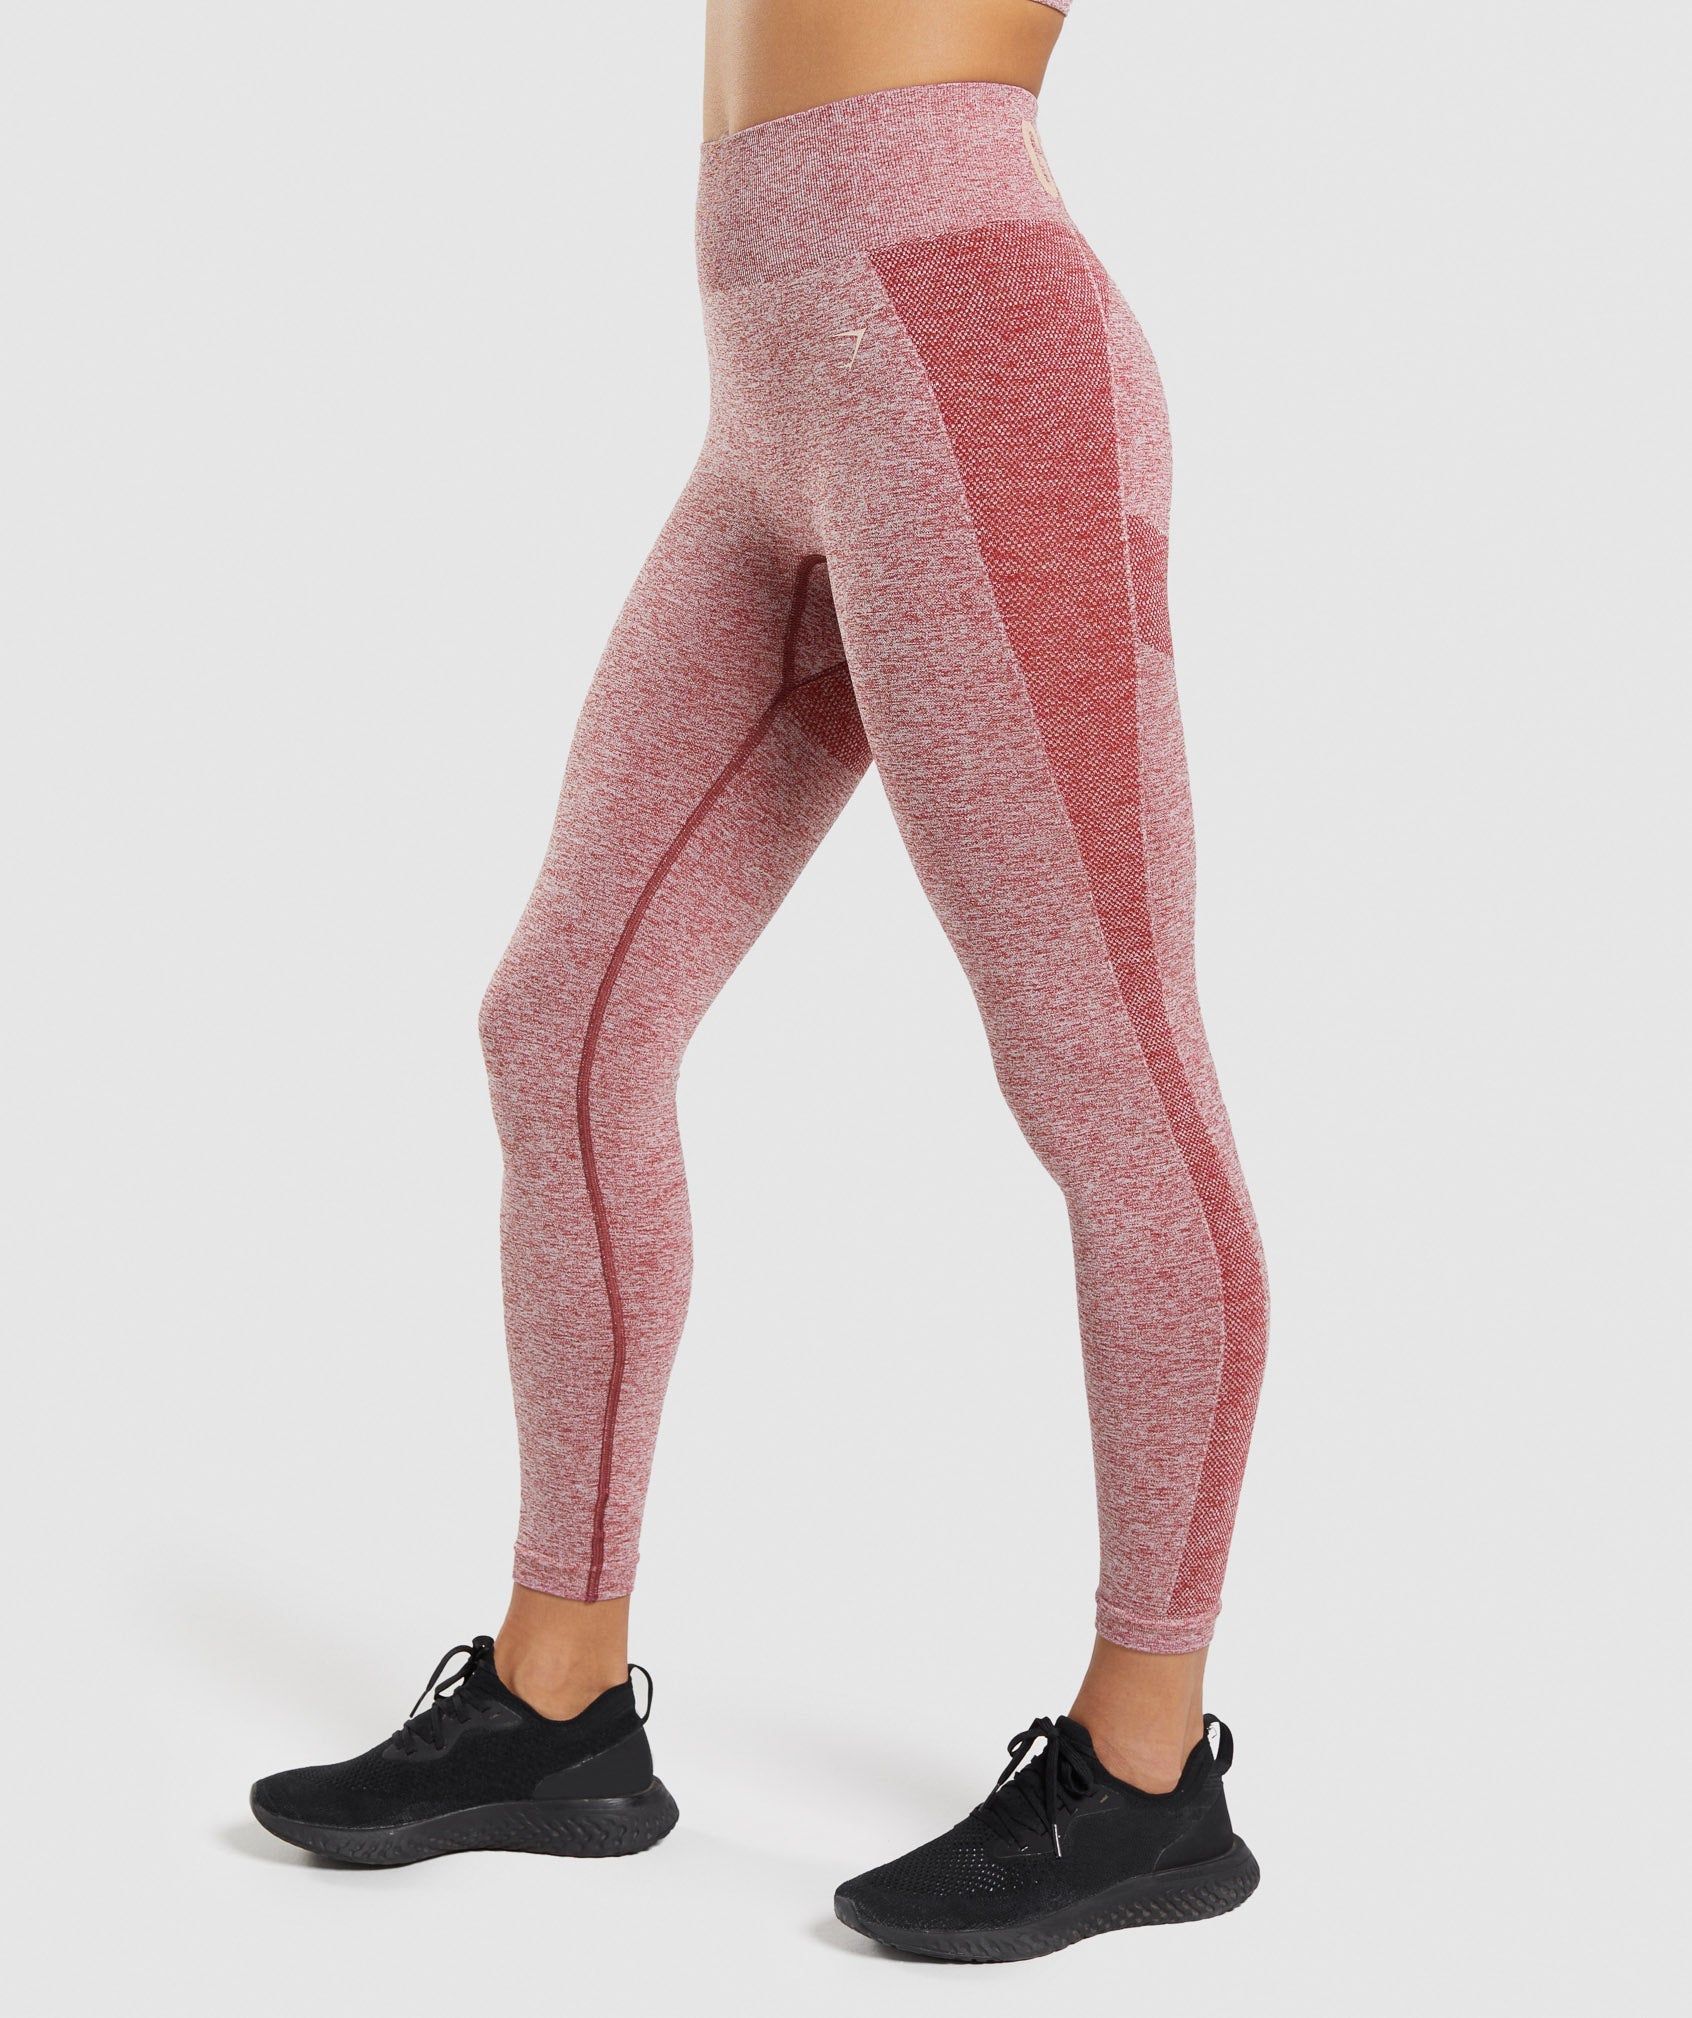 Gymshark Flex Leggings Gray / pink Women’s xs full length gym pants